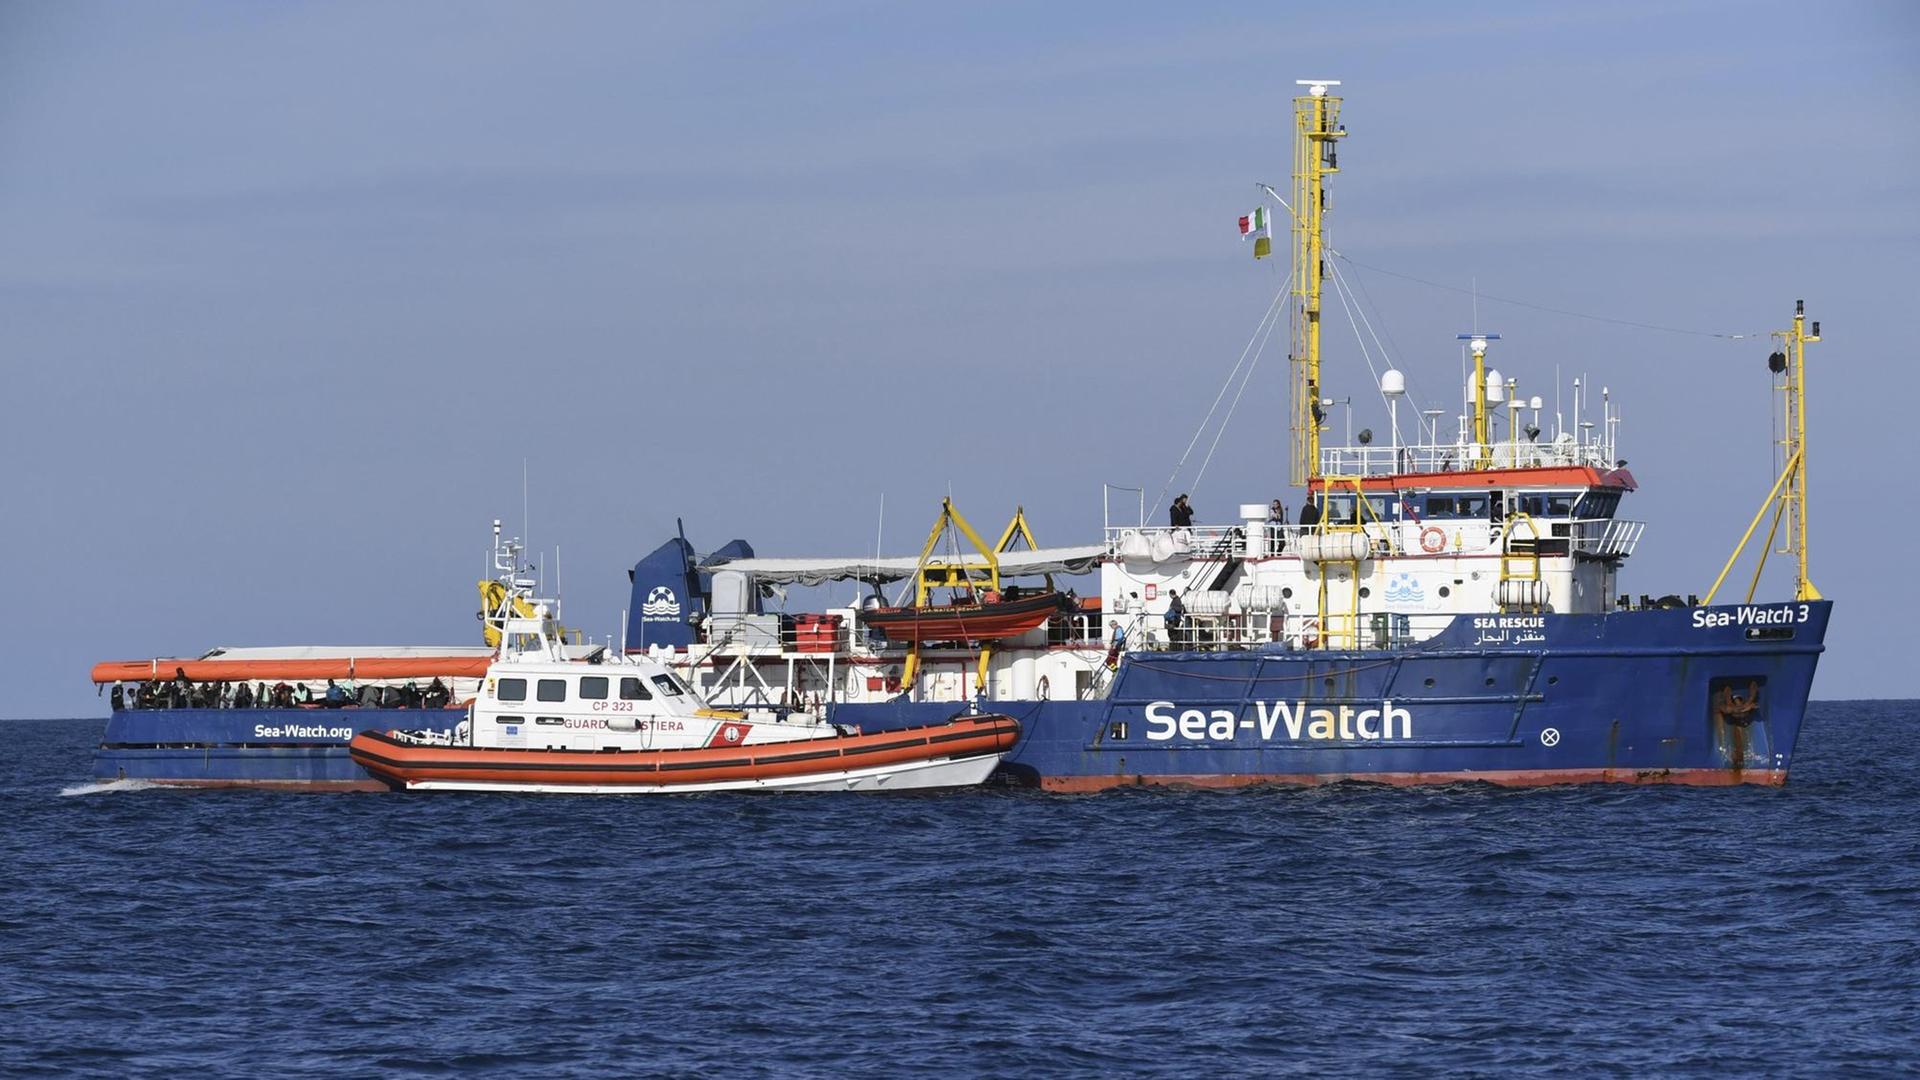 Das Foto zeigt das Schiff "Sea-Watch 3" und ein Schff der italienischen Küstenwache.